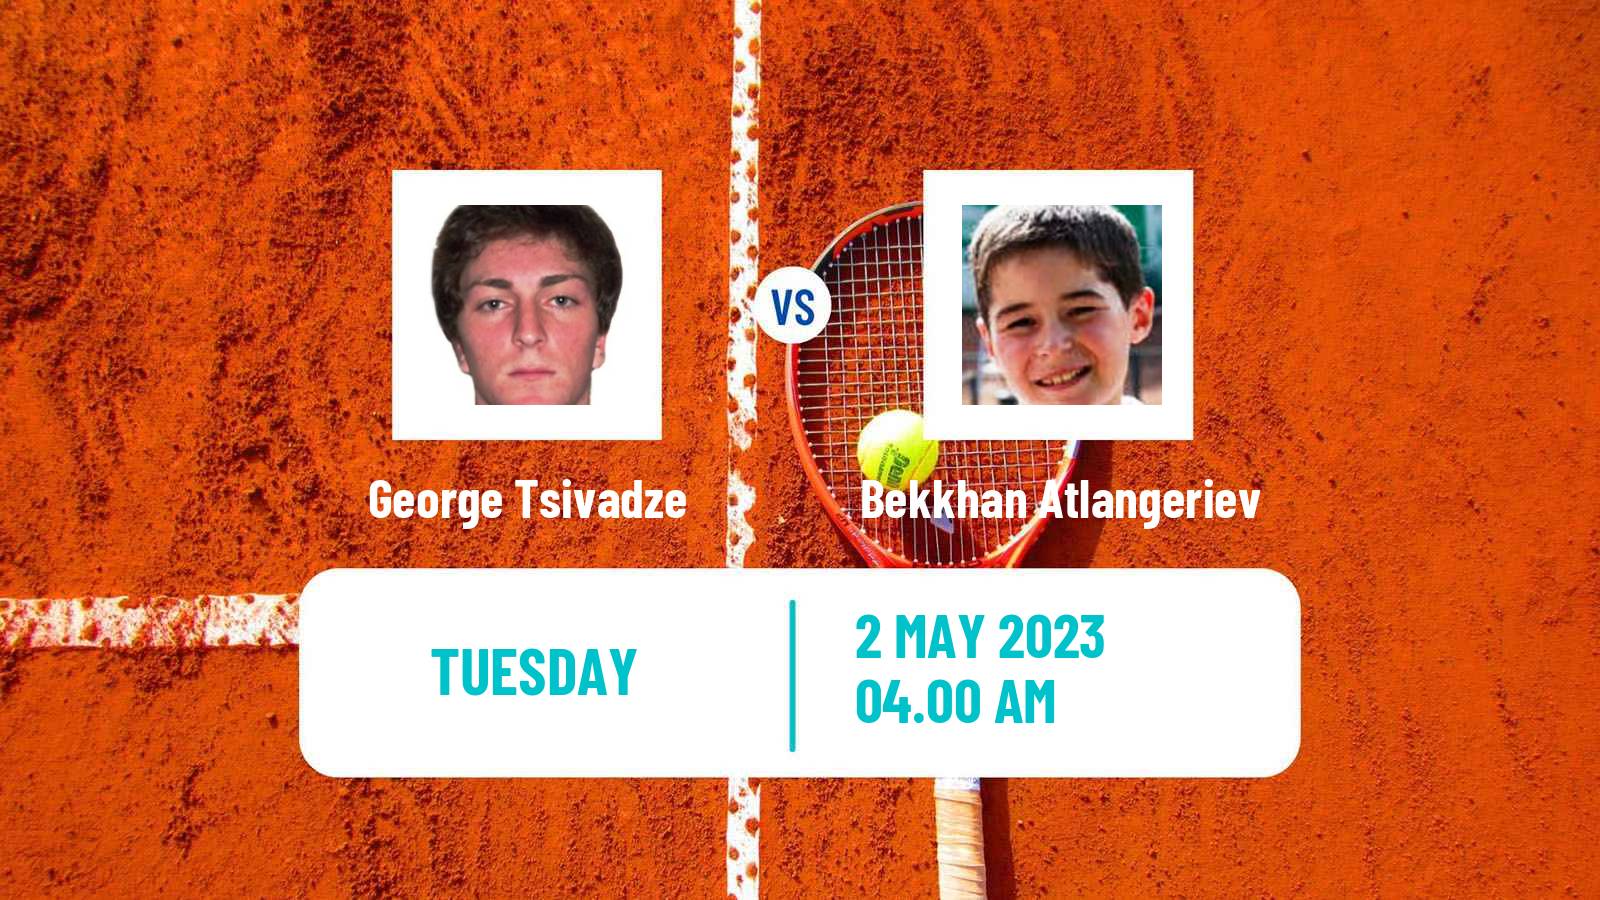 Tennis ITF Tournaments George Tsivadze - Bekkhan Atlangeriev